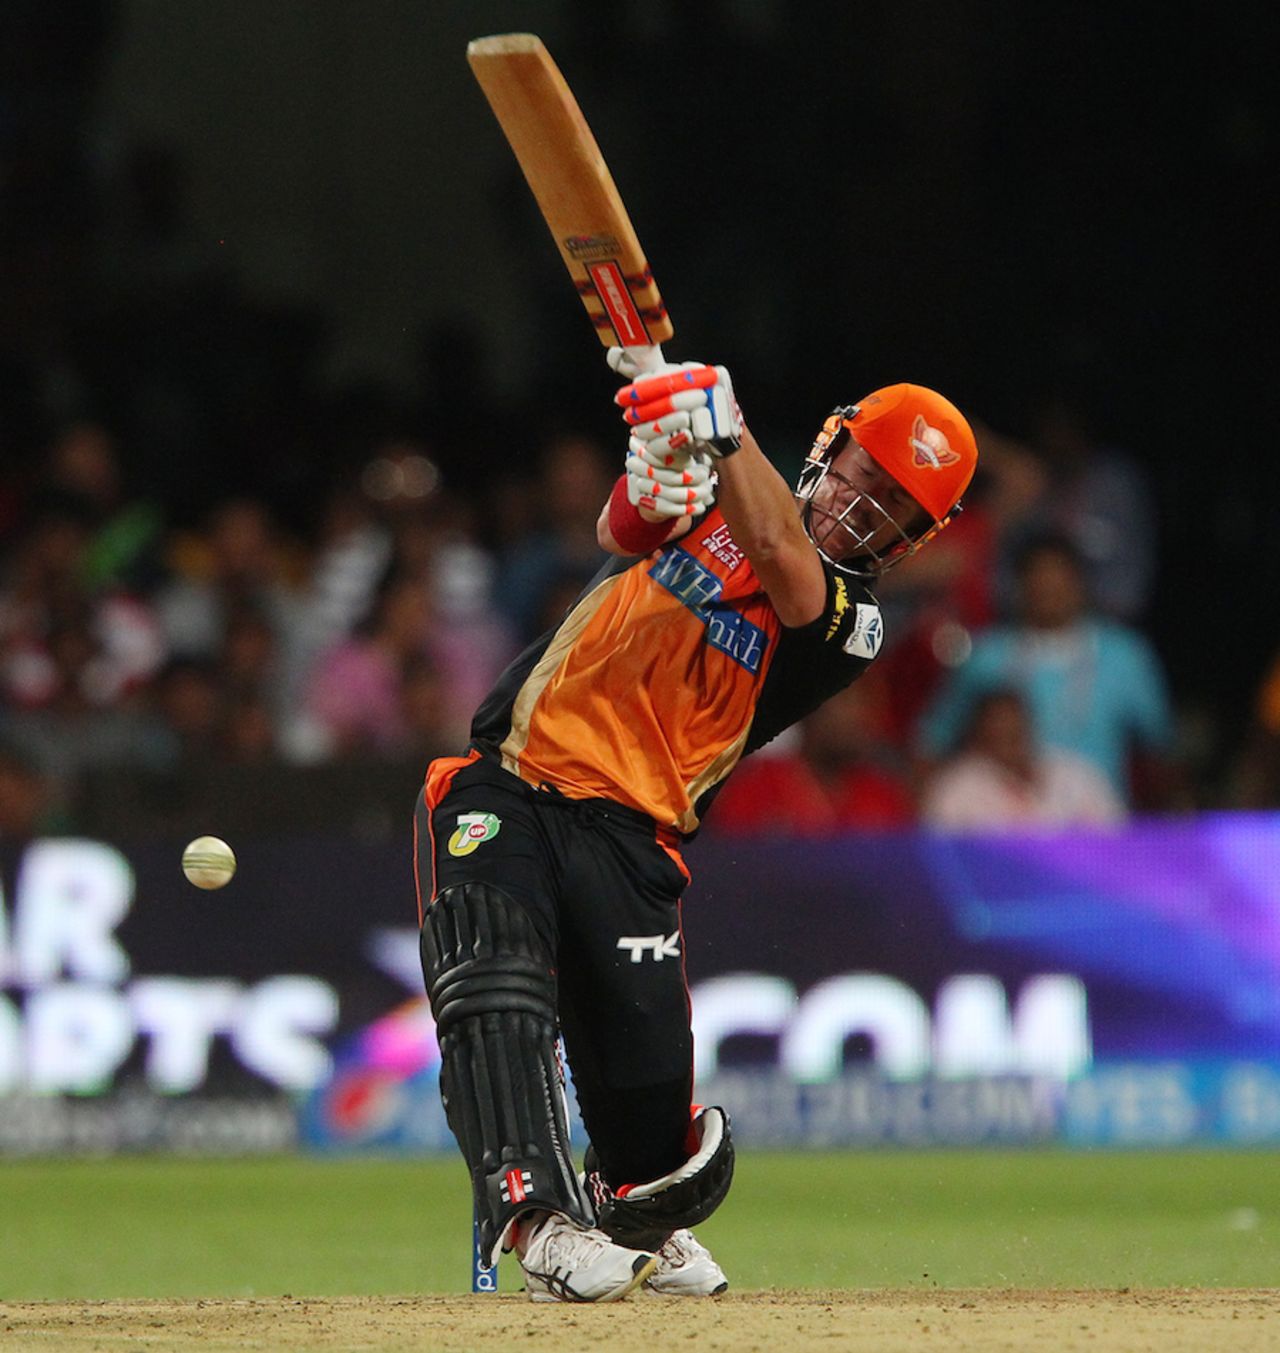 David Warner throws his bat at one, Royal Challengers Bangalore v Sunrisers Hyderabad, IPL, Bangalore, May 4, 2014